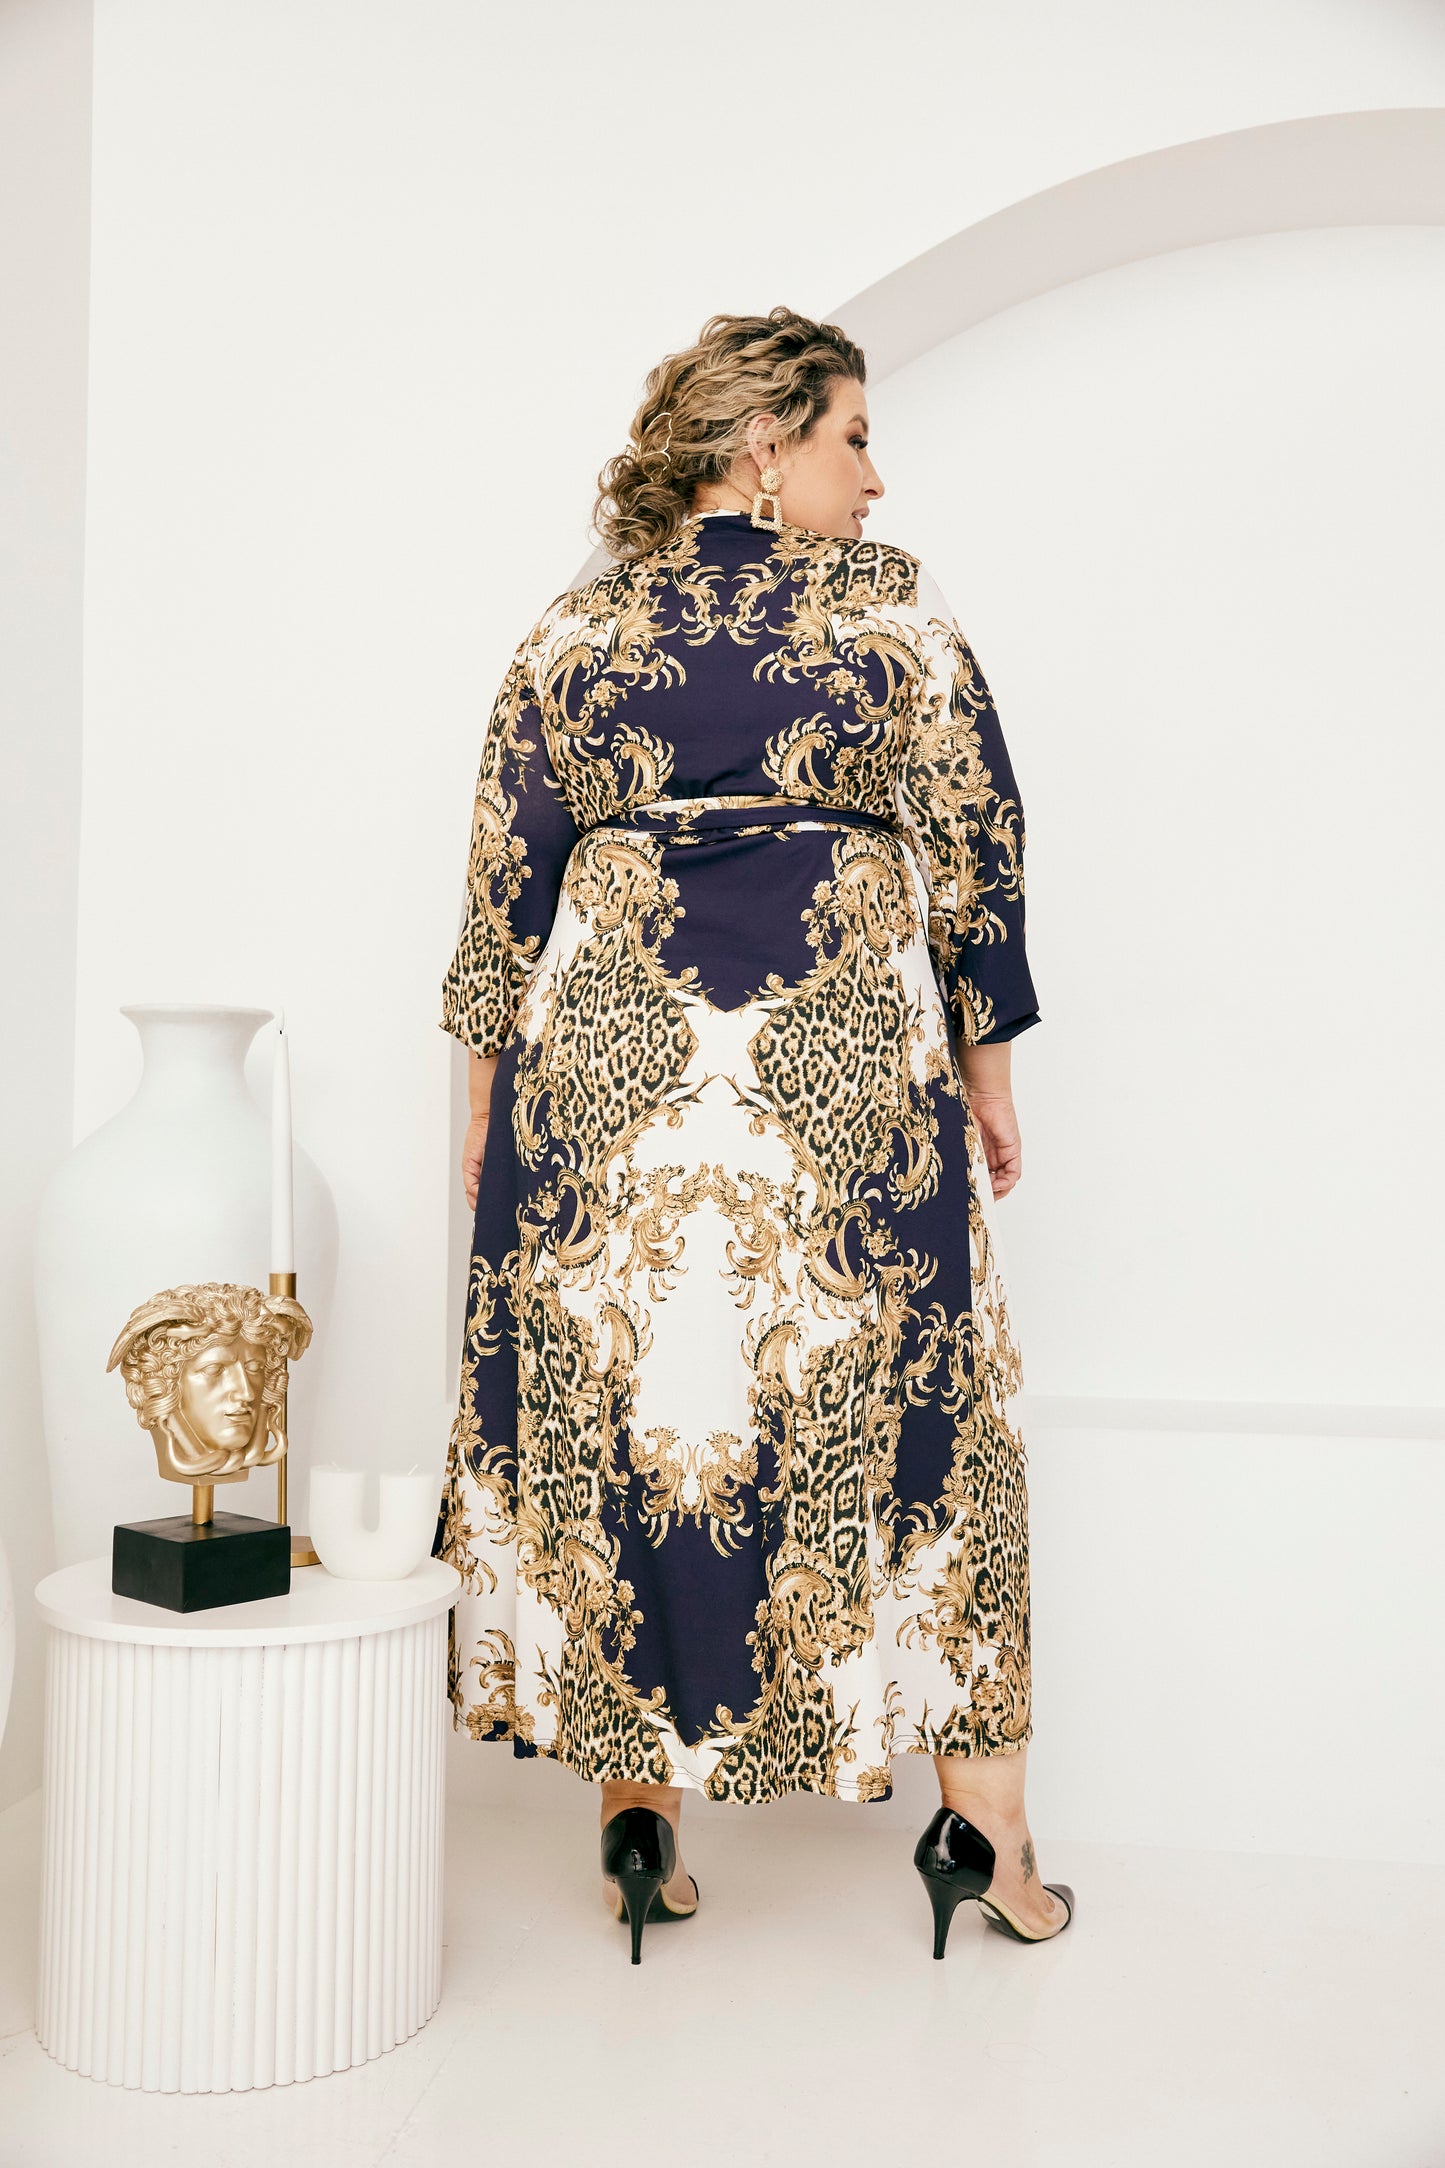 Rachel Wrap Dress in Baroque Print